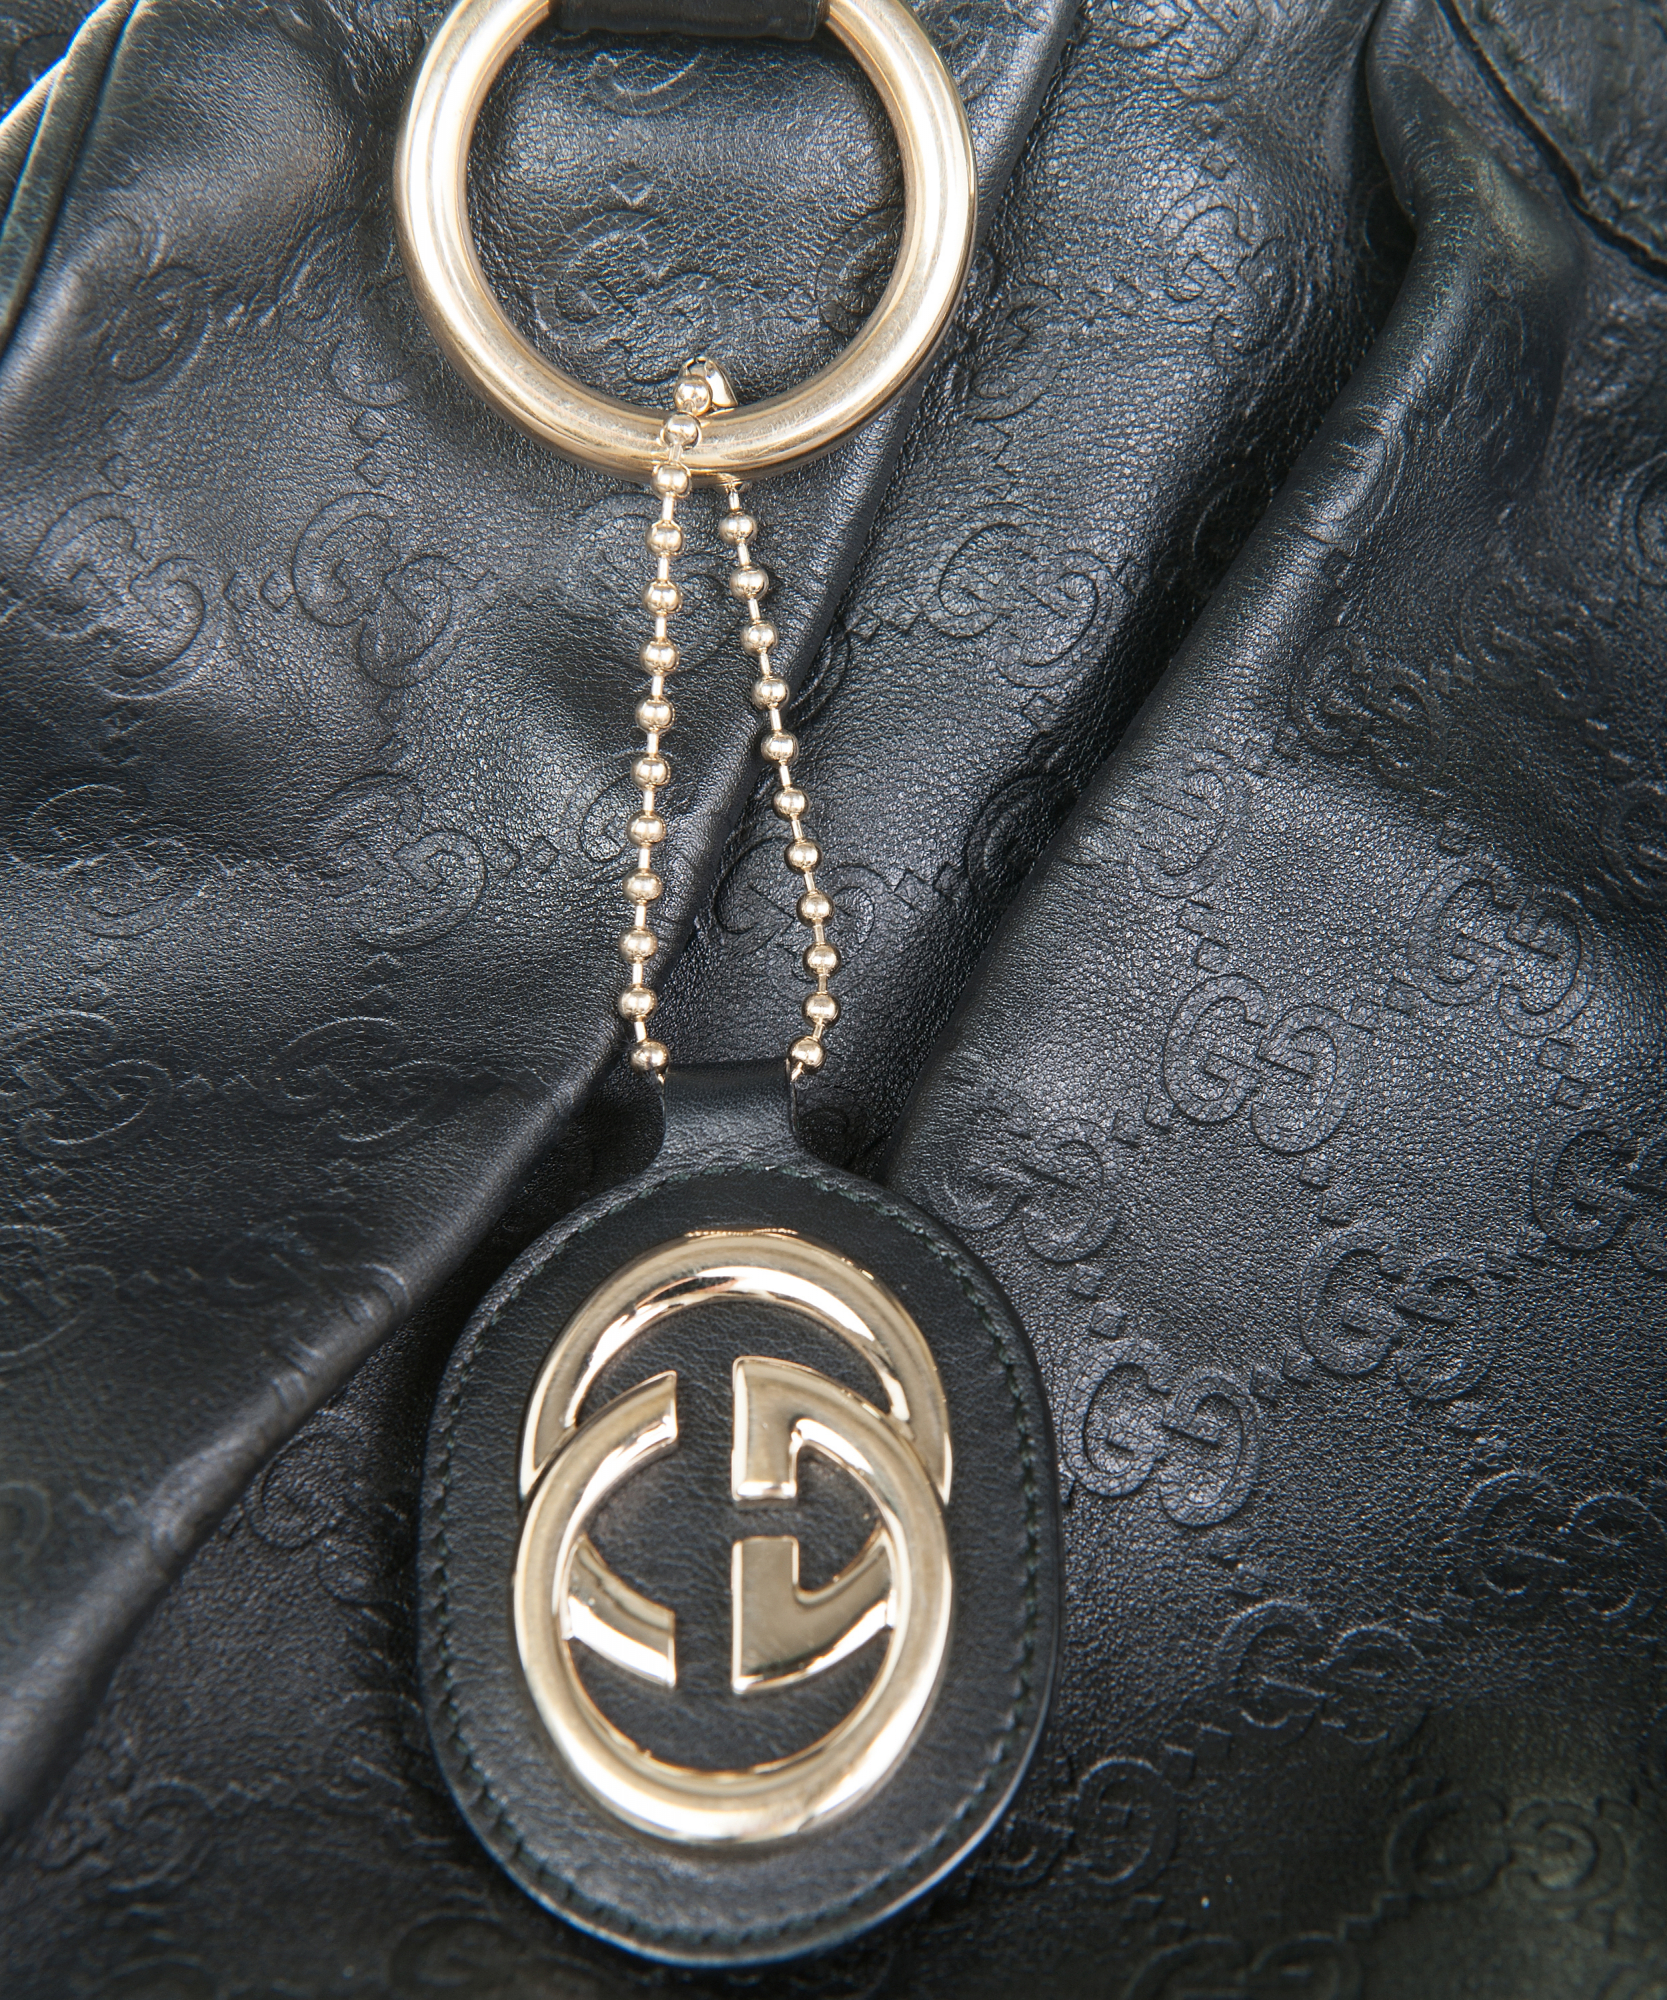 Gucci Sukey Guccissima Leather Tote, Black, Size Medium